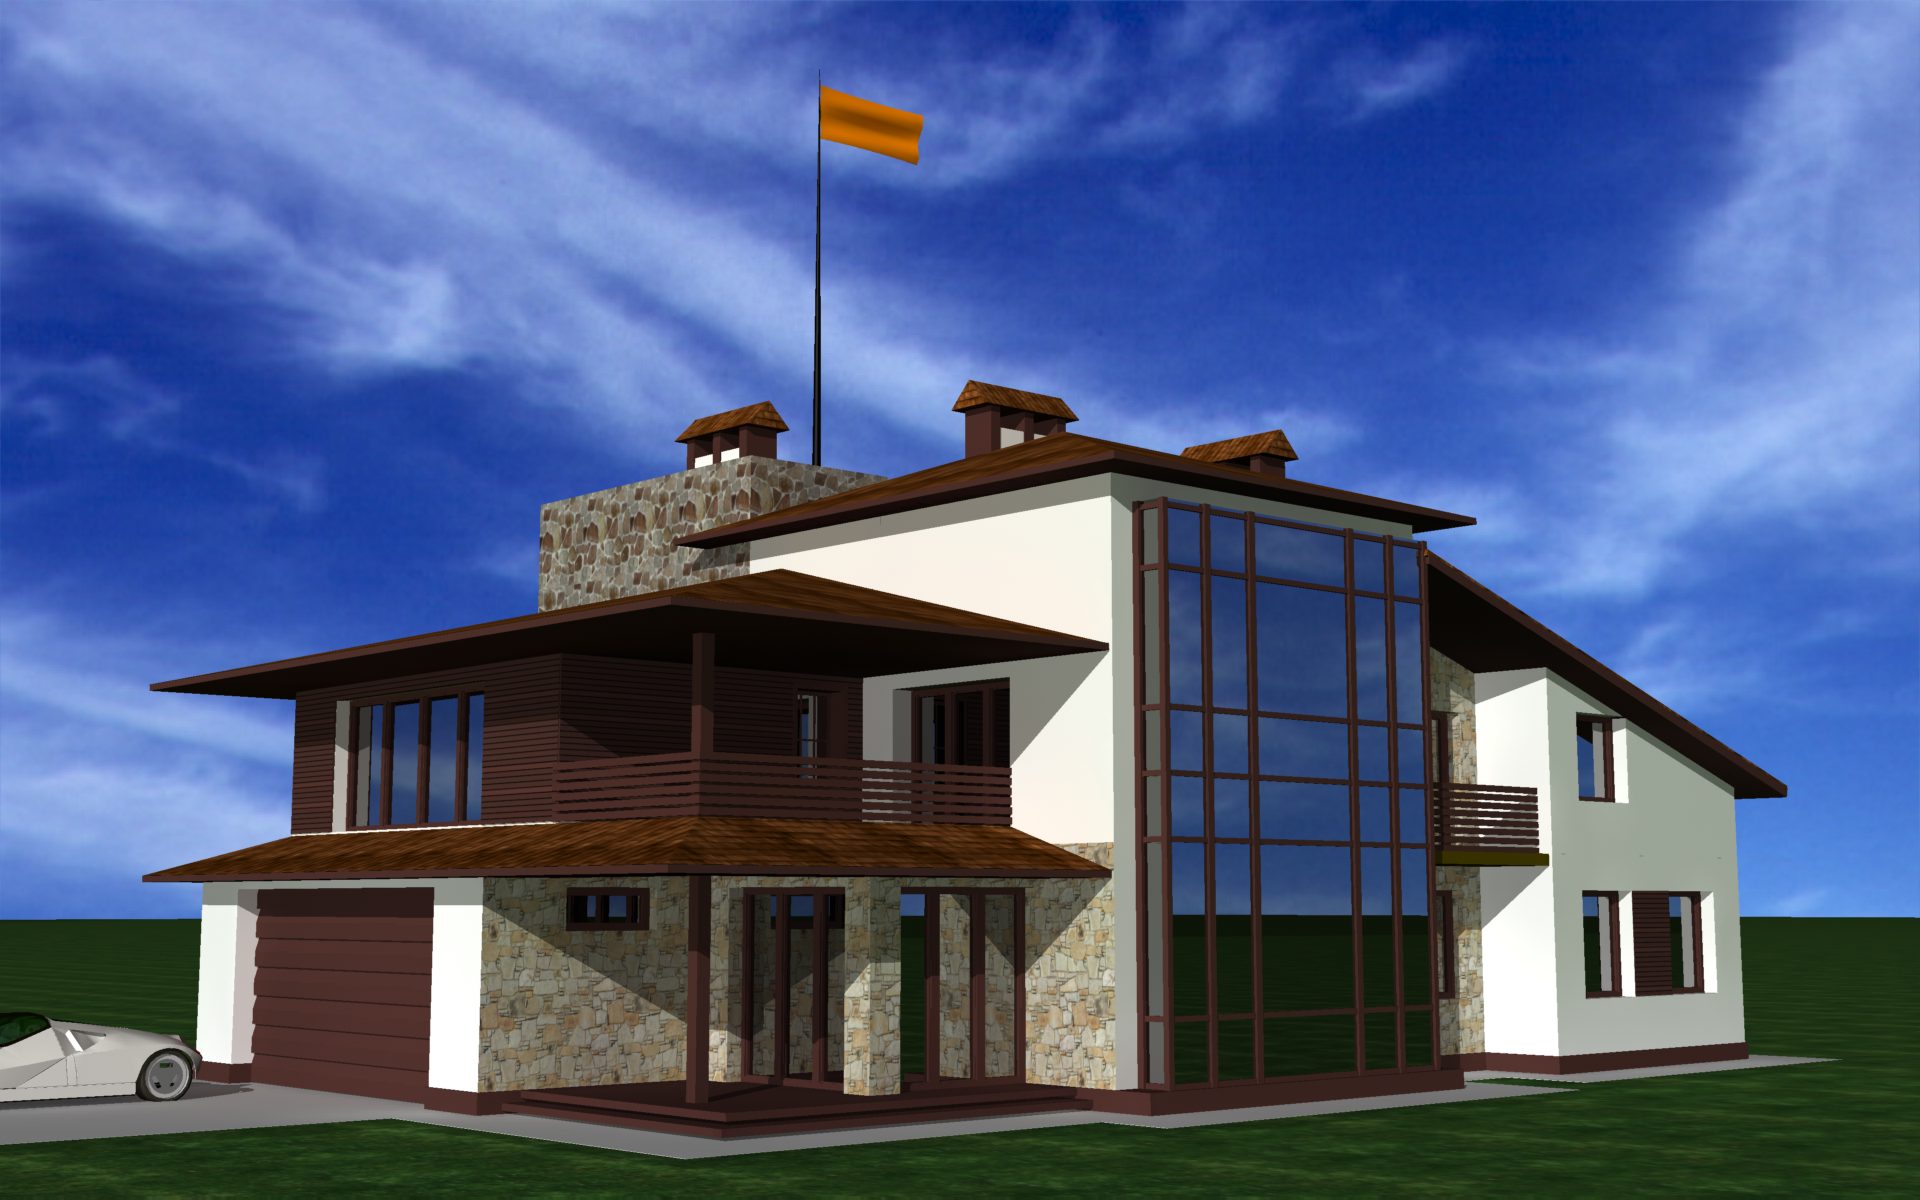 décor lumineux d'une maison de campagne dans un style architectural